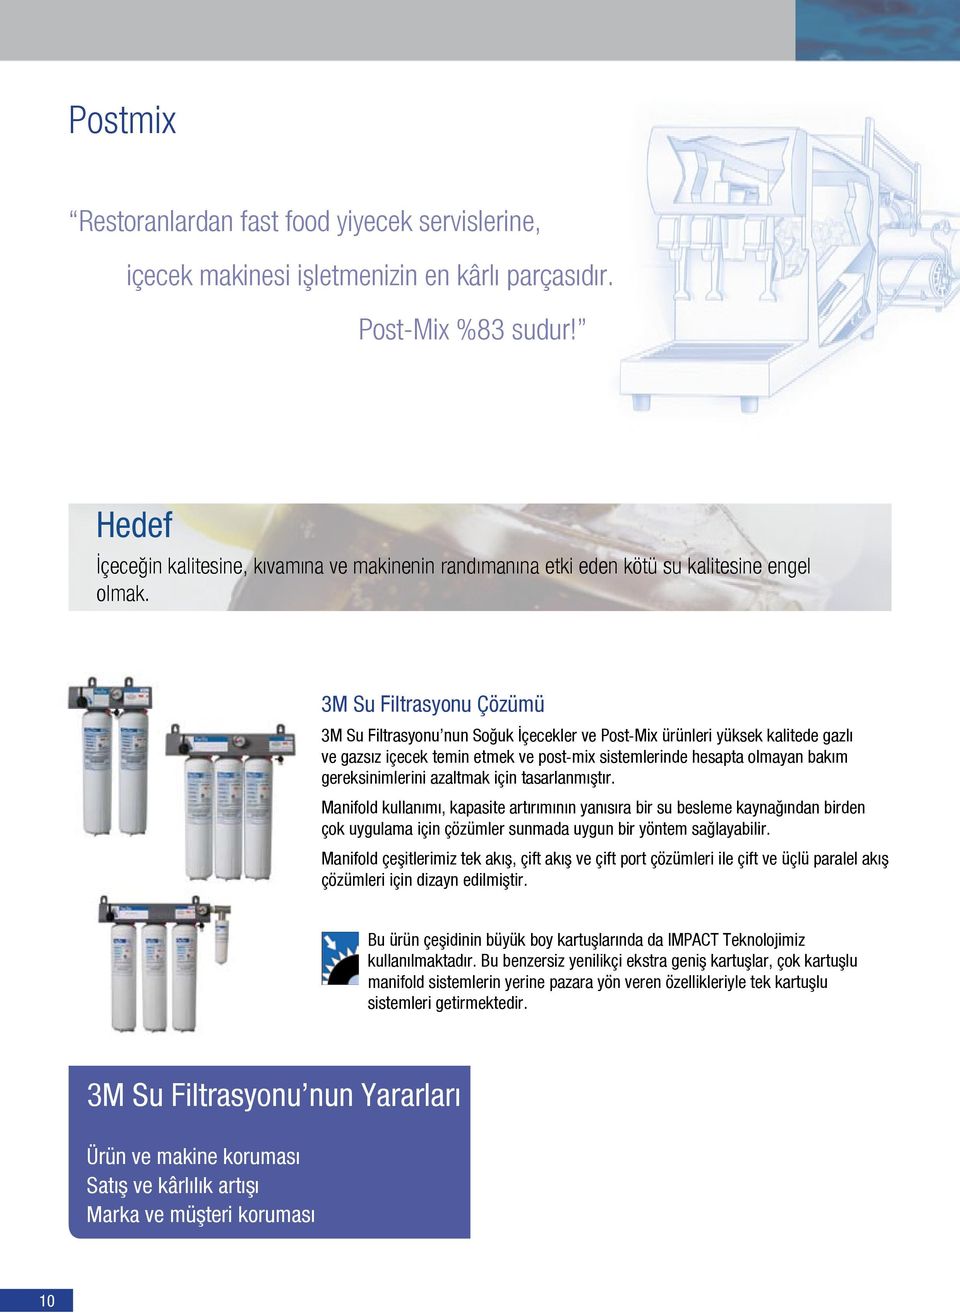 3M Su Filtrasyonu Çözümü 3M Su Filtrasyonu nun Soğuk İçecekler ve Post-Mix ürünleri yüksek kalitede gazlı ve gazsız içecek temin etmek ve post-mix sistemlerinde hesapta olmayan bakım gereksinimlerini